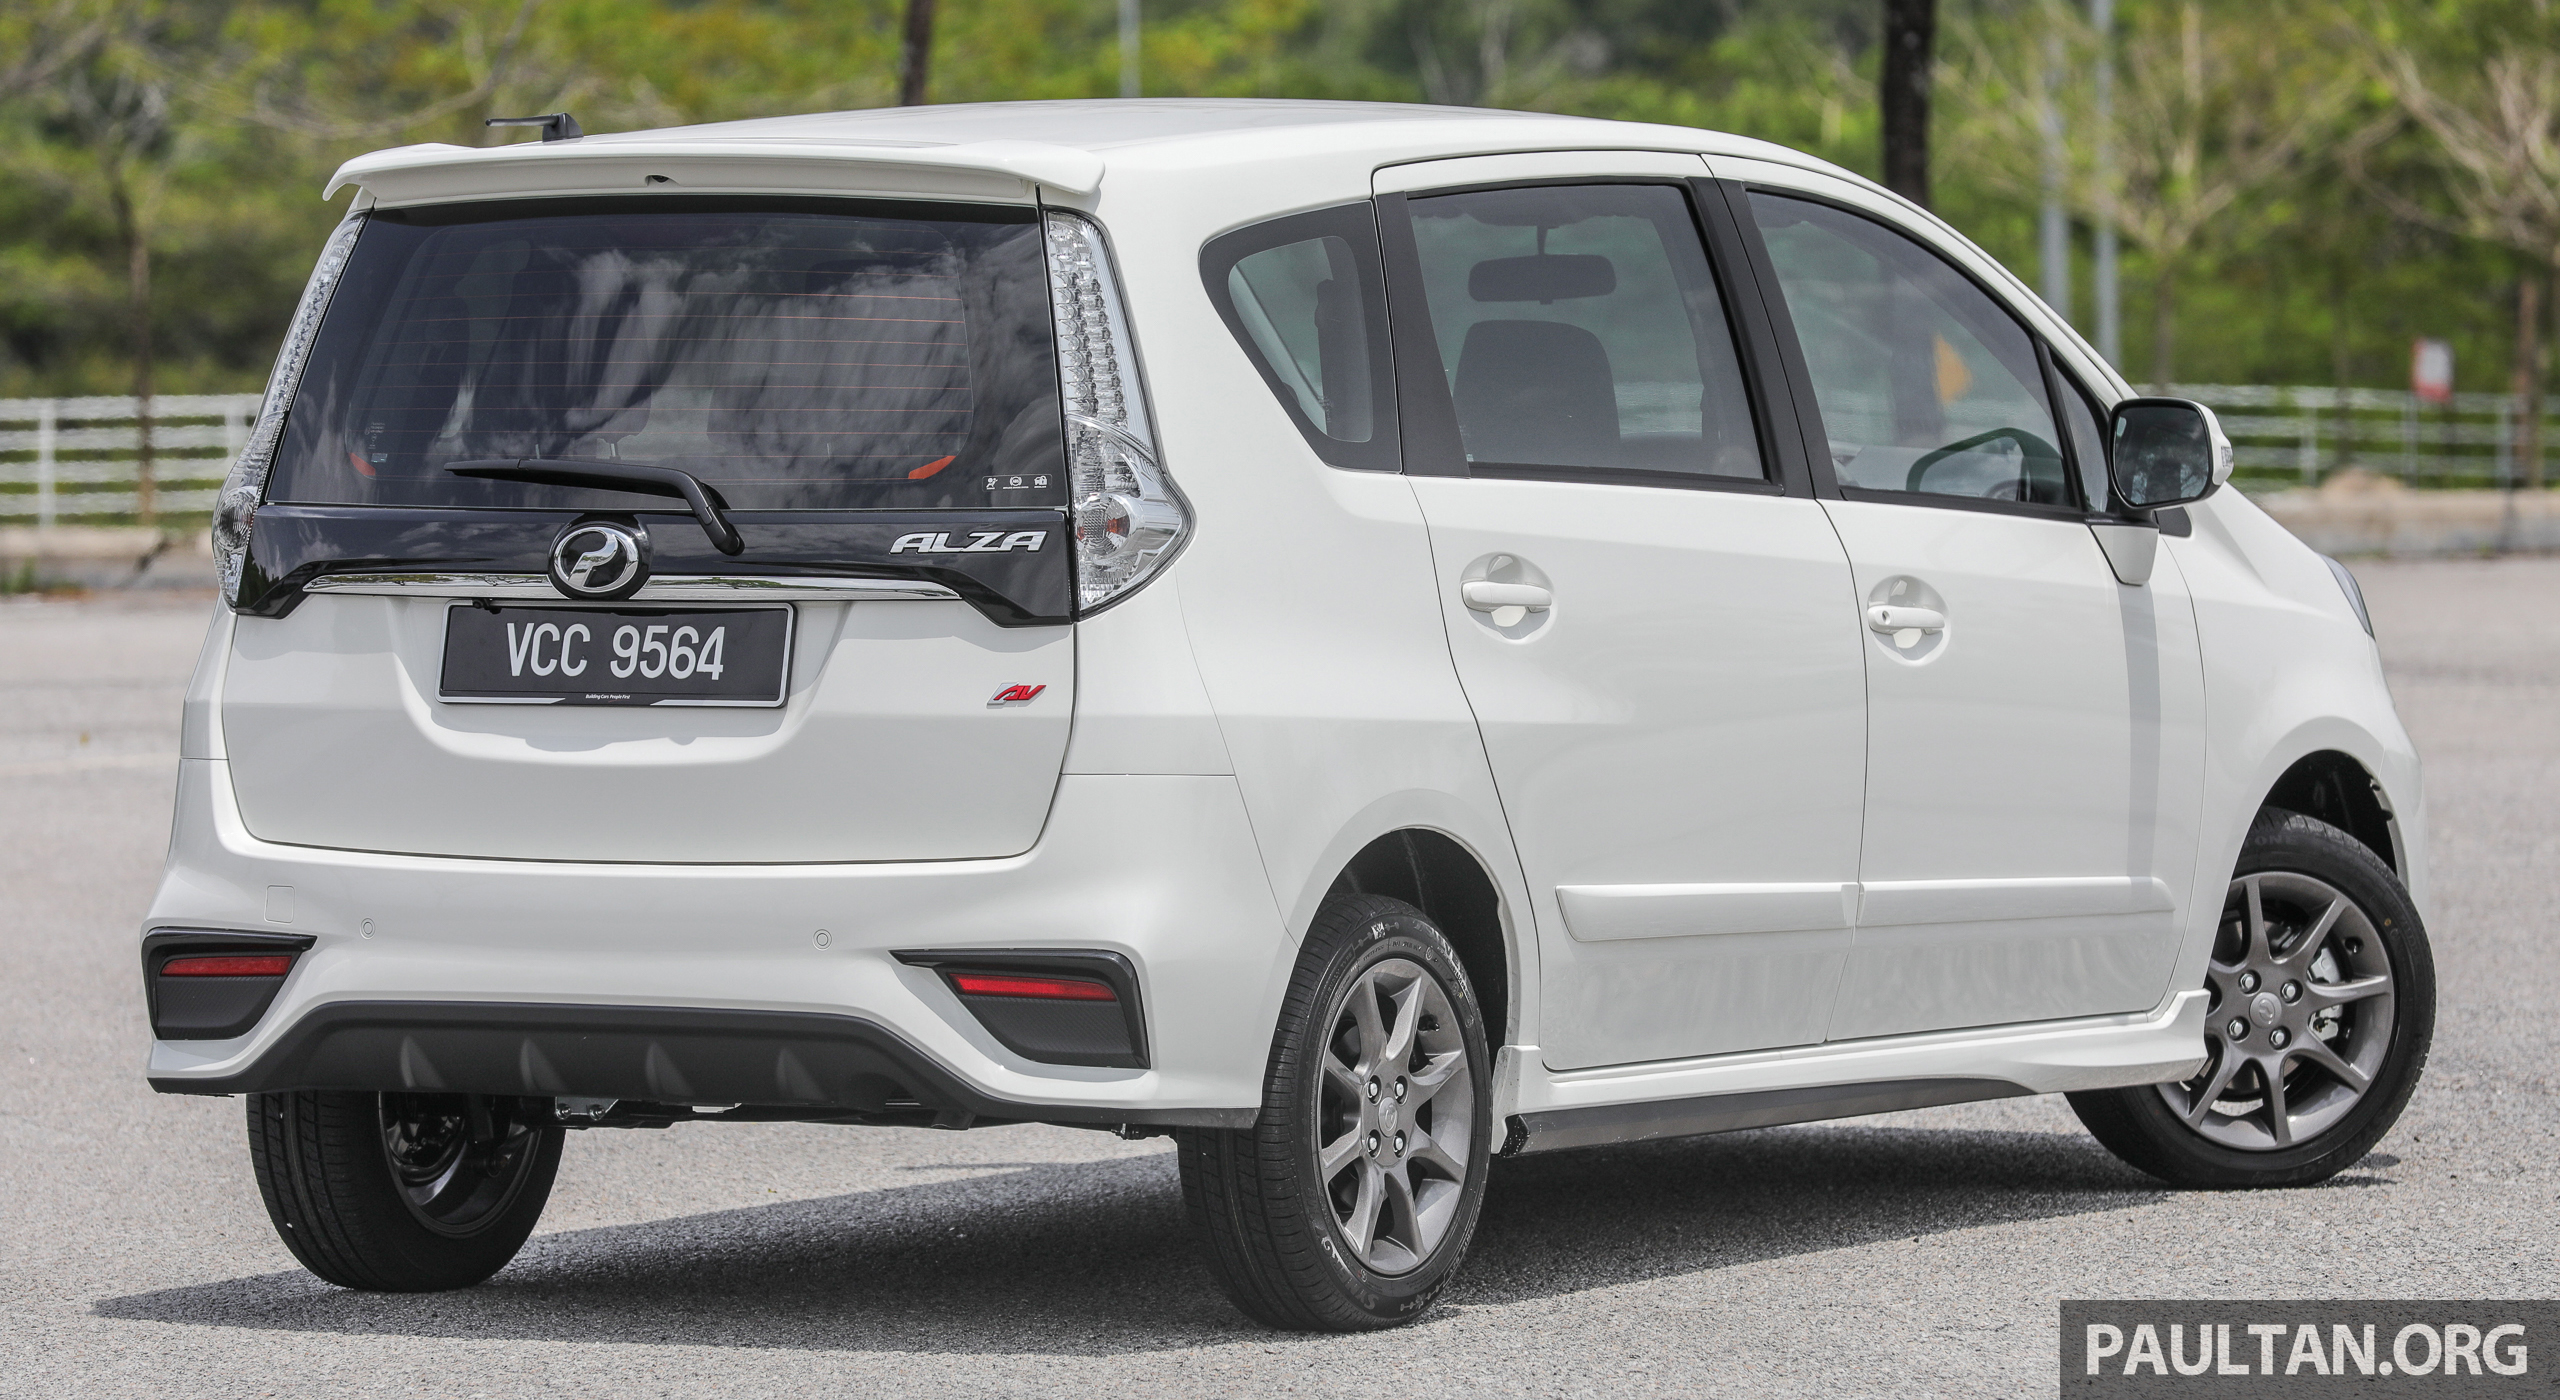 GALERI: Perodua Alza facelift – Advance dan SE Perodua 